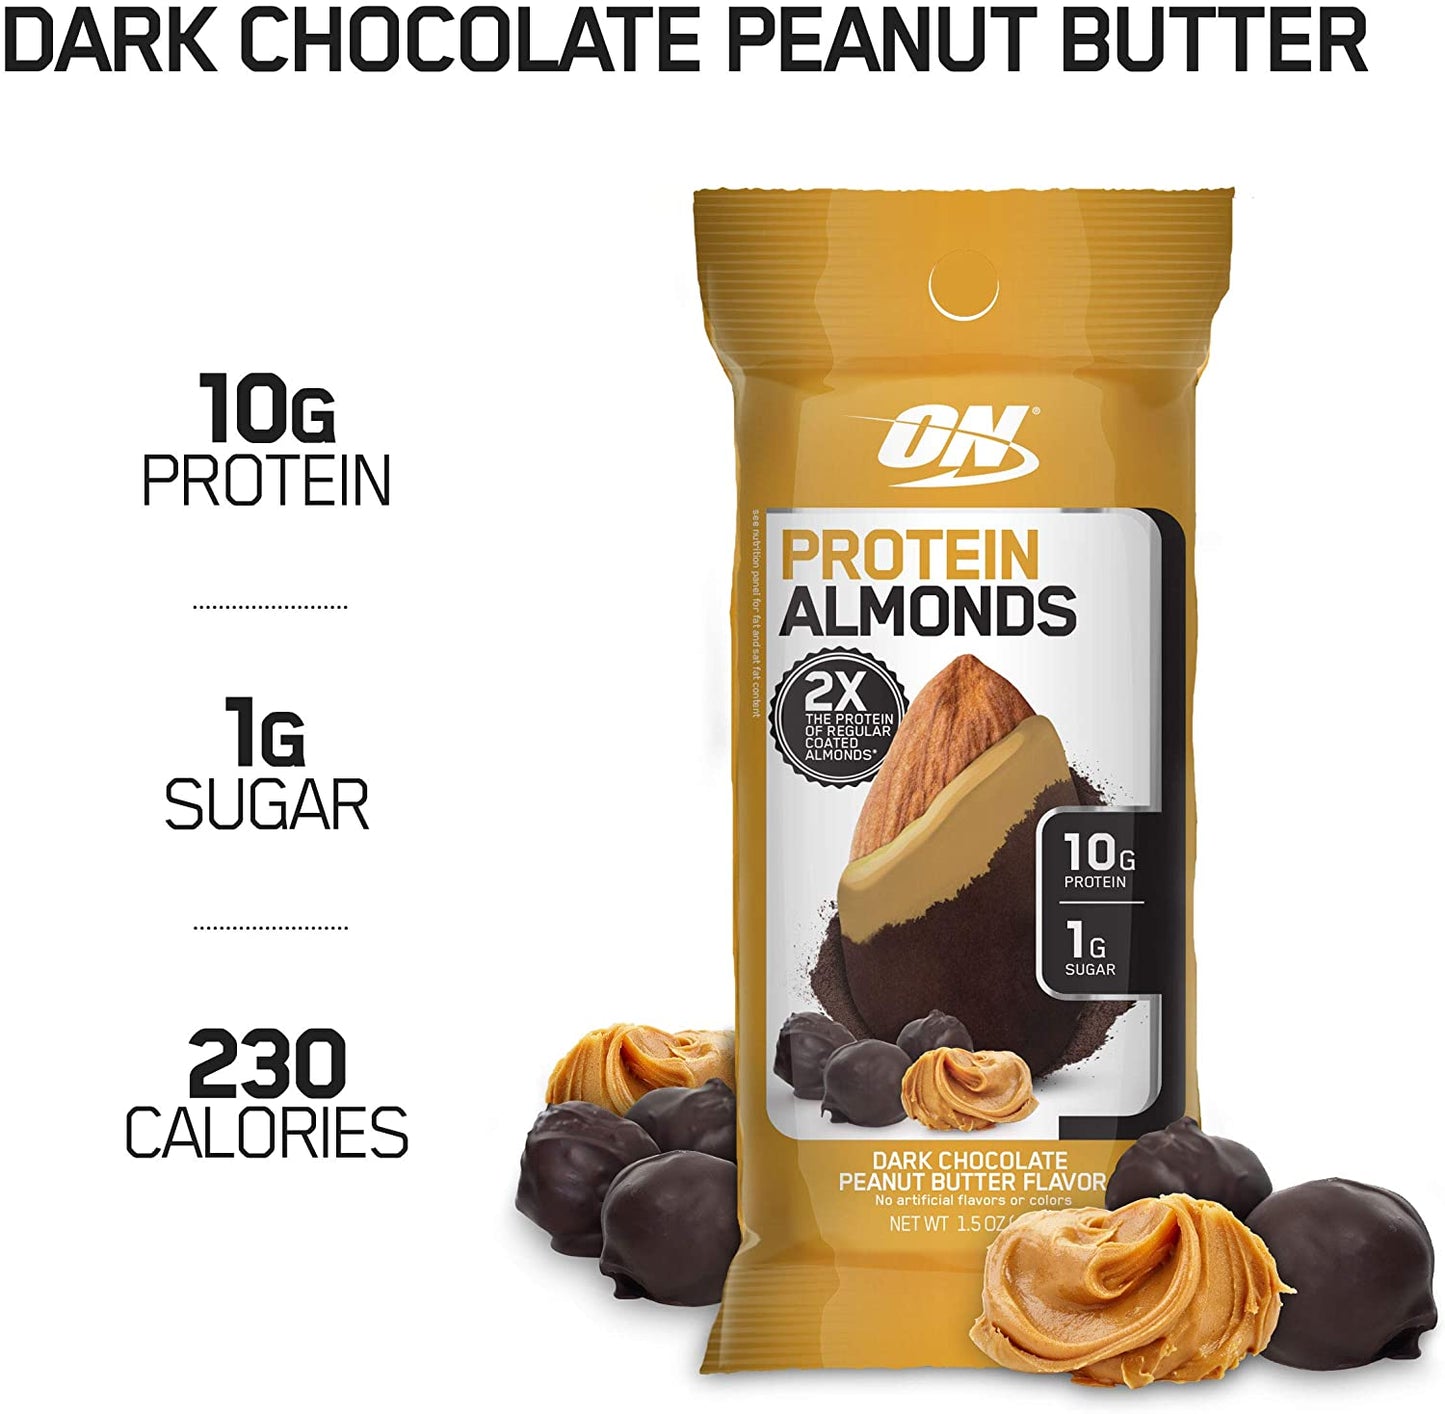 PROTEIN ALMONDS - Dark Chocolate Peanut Butter